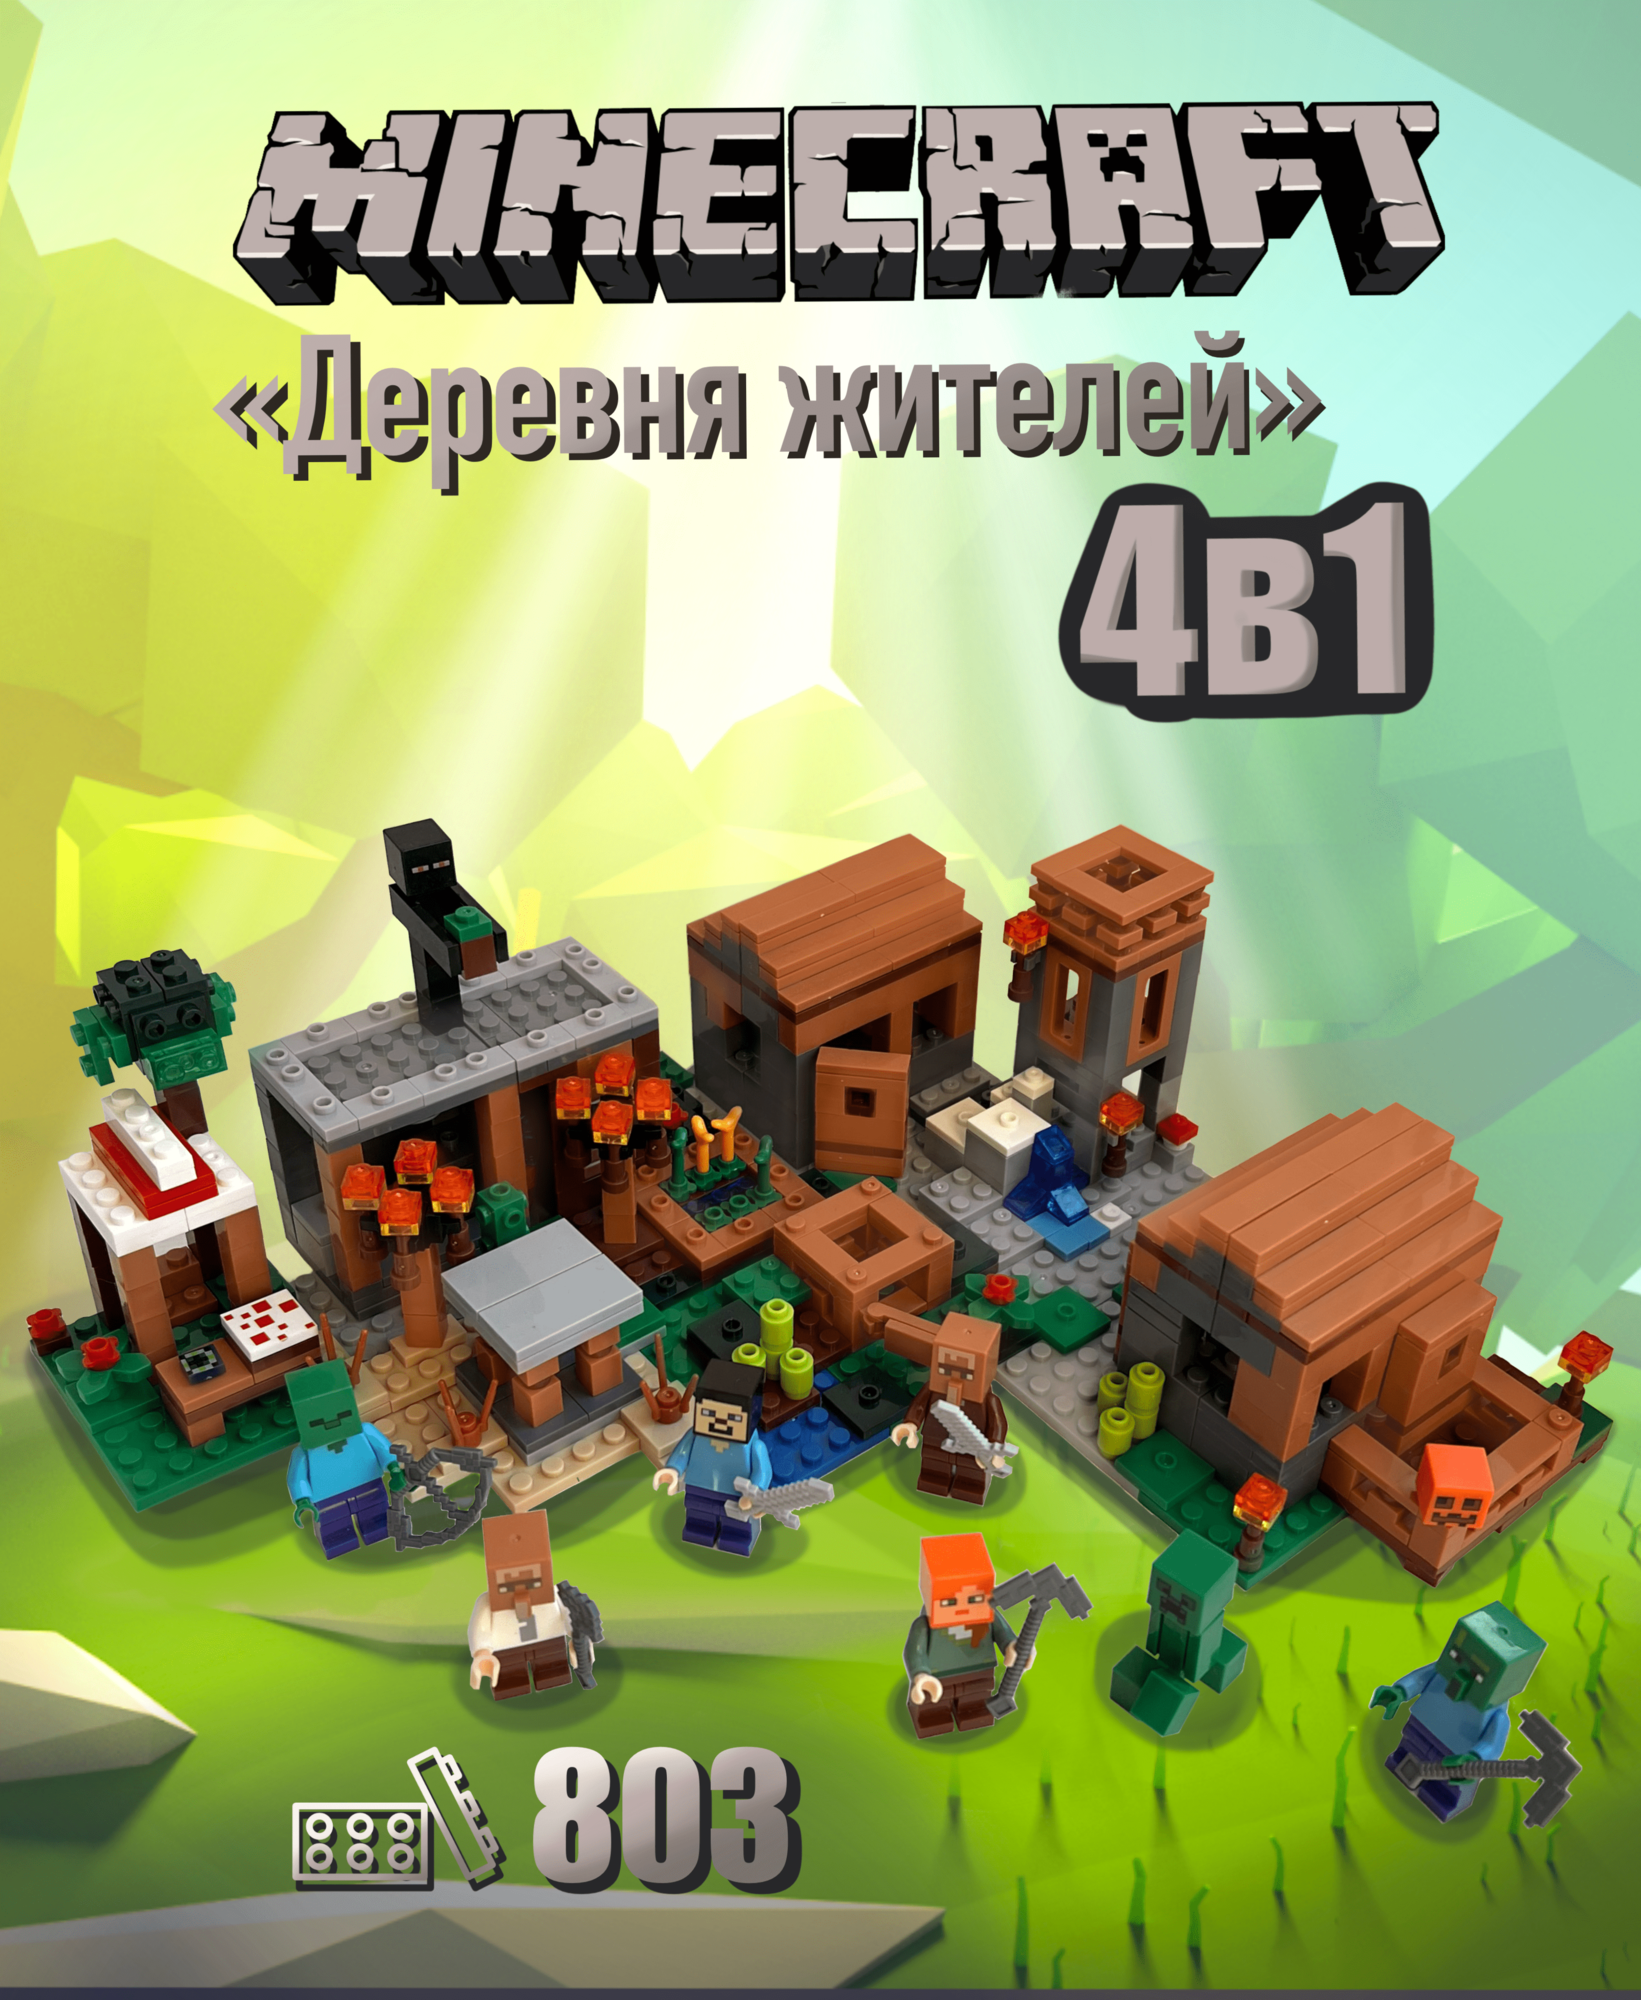 Конструктор Майнкрафт "Деревня с жителями 4 в 1" Minecraft 6019, 803 детали